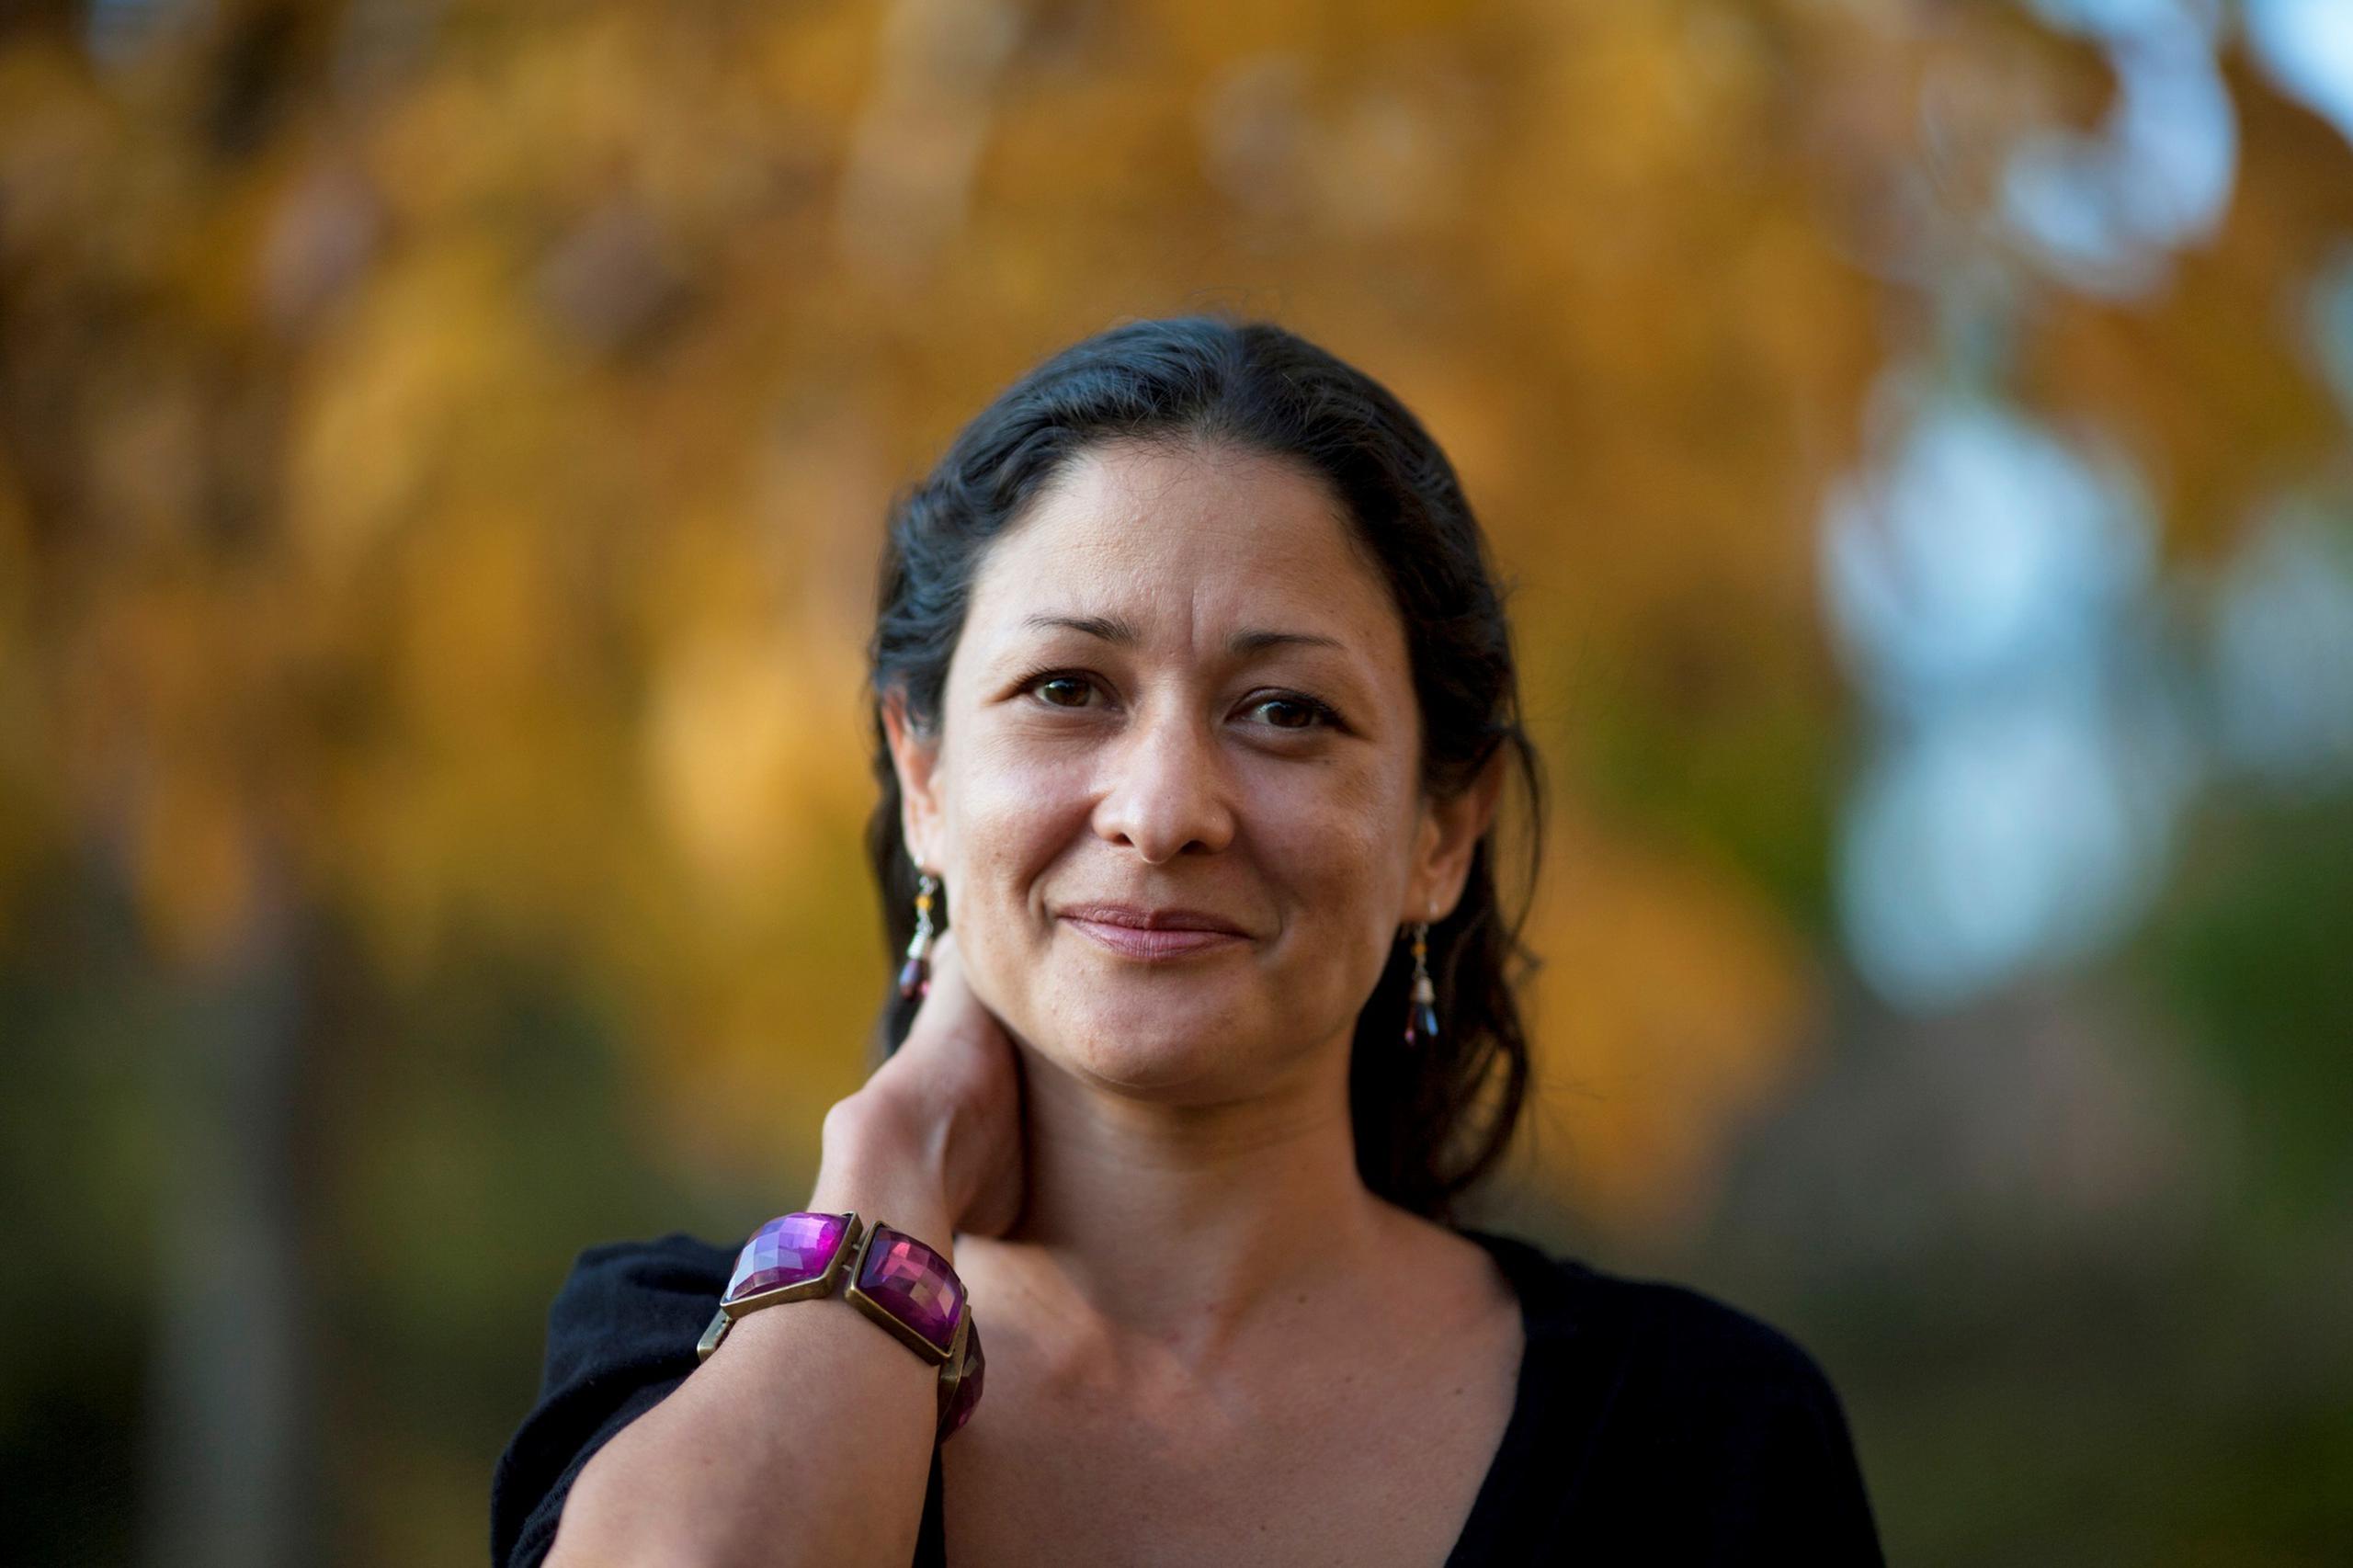 La escritora ha publicado otras cuatro novelas: Cosquillas en la lengua" (2003), "Coleccionistas de polvos raros" (2007), "Conspiración iguana" (2009) y "La perra" (2017).